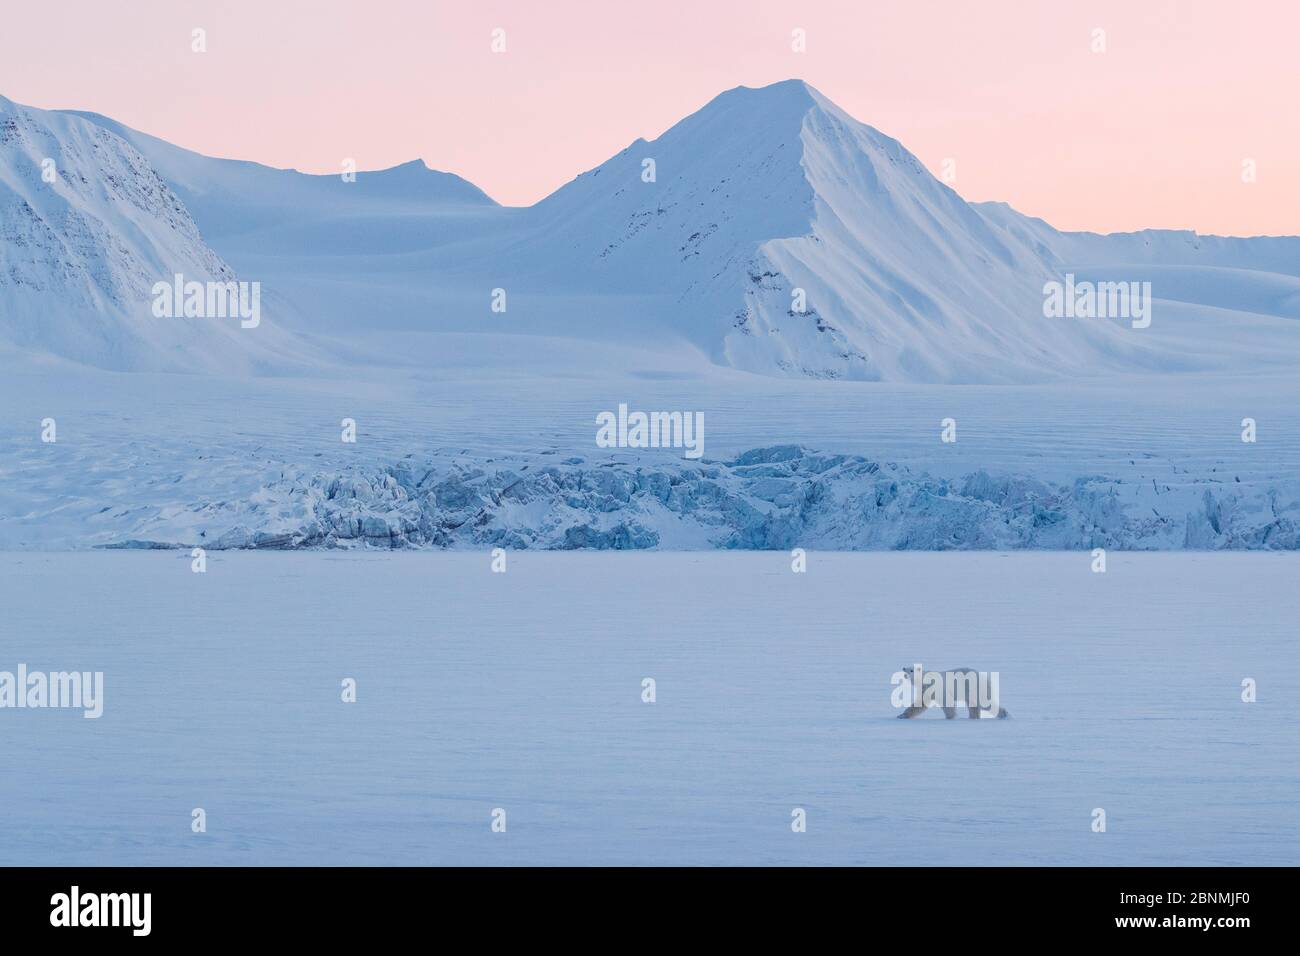 Ours polaire (Ursus maritimus) devant un glacier dans un paysage hivernal enneigé au coucher du soleil, Spitsbergen, Svalbard, Norvège, avril Banque D'Images